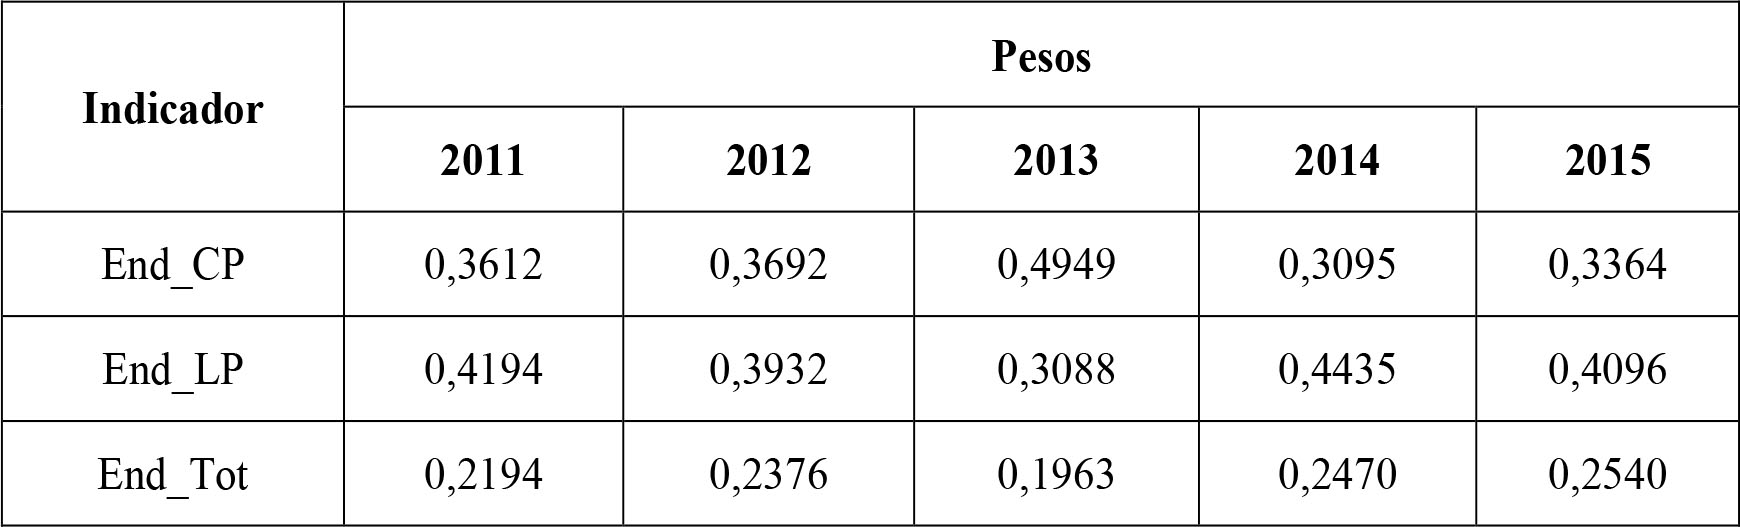 Indicadores de estrutura de capital e pesos relativos, por ano